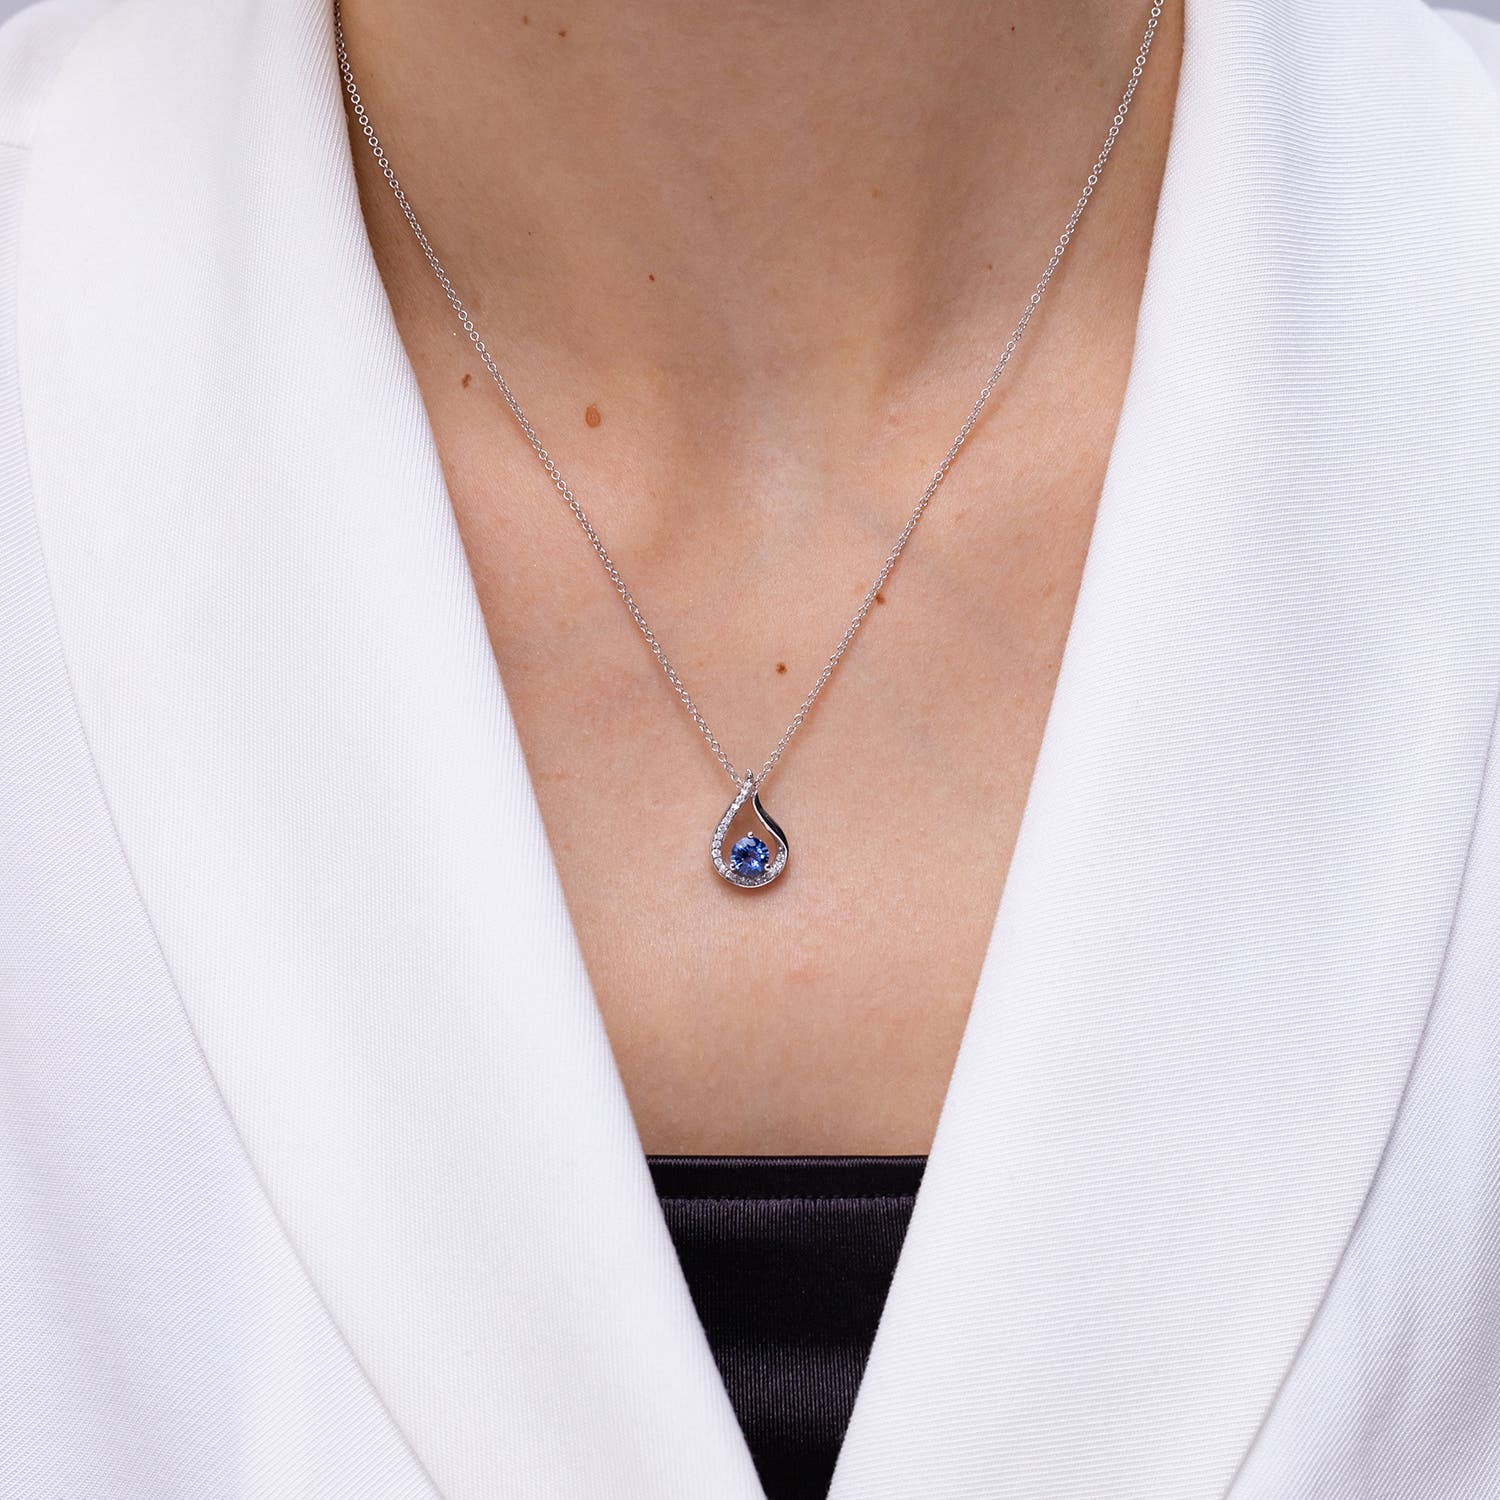 Shop Blue Sapphire Pendant Necklaces for Women | Angara